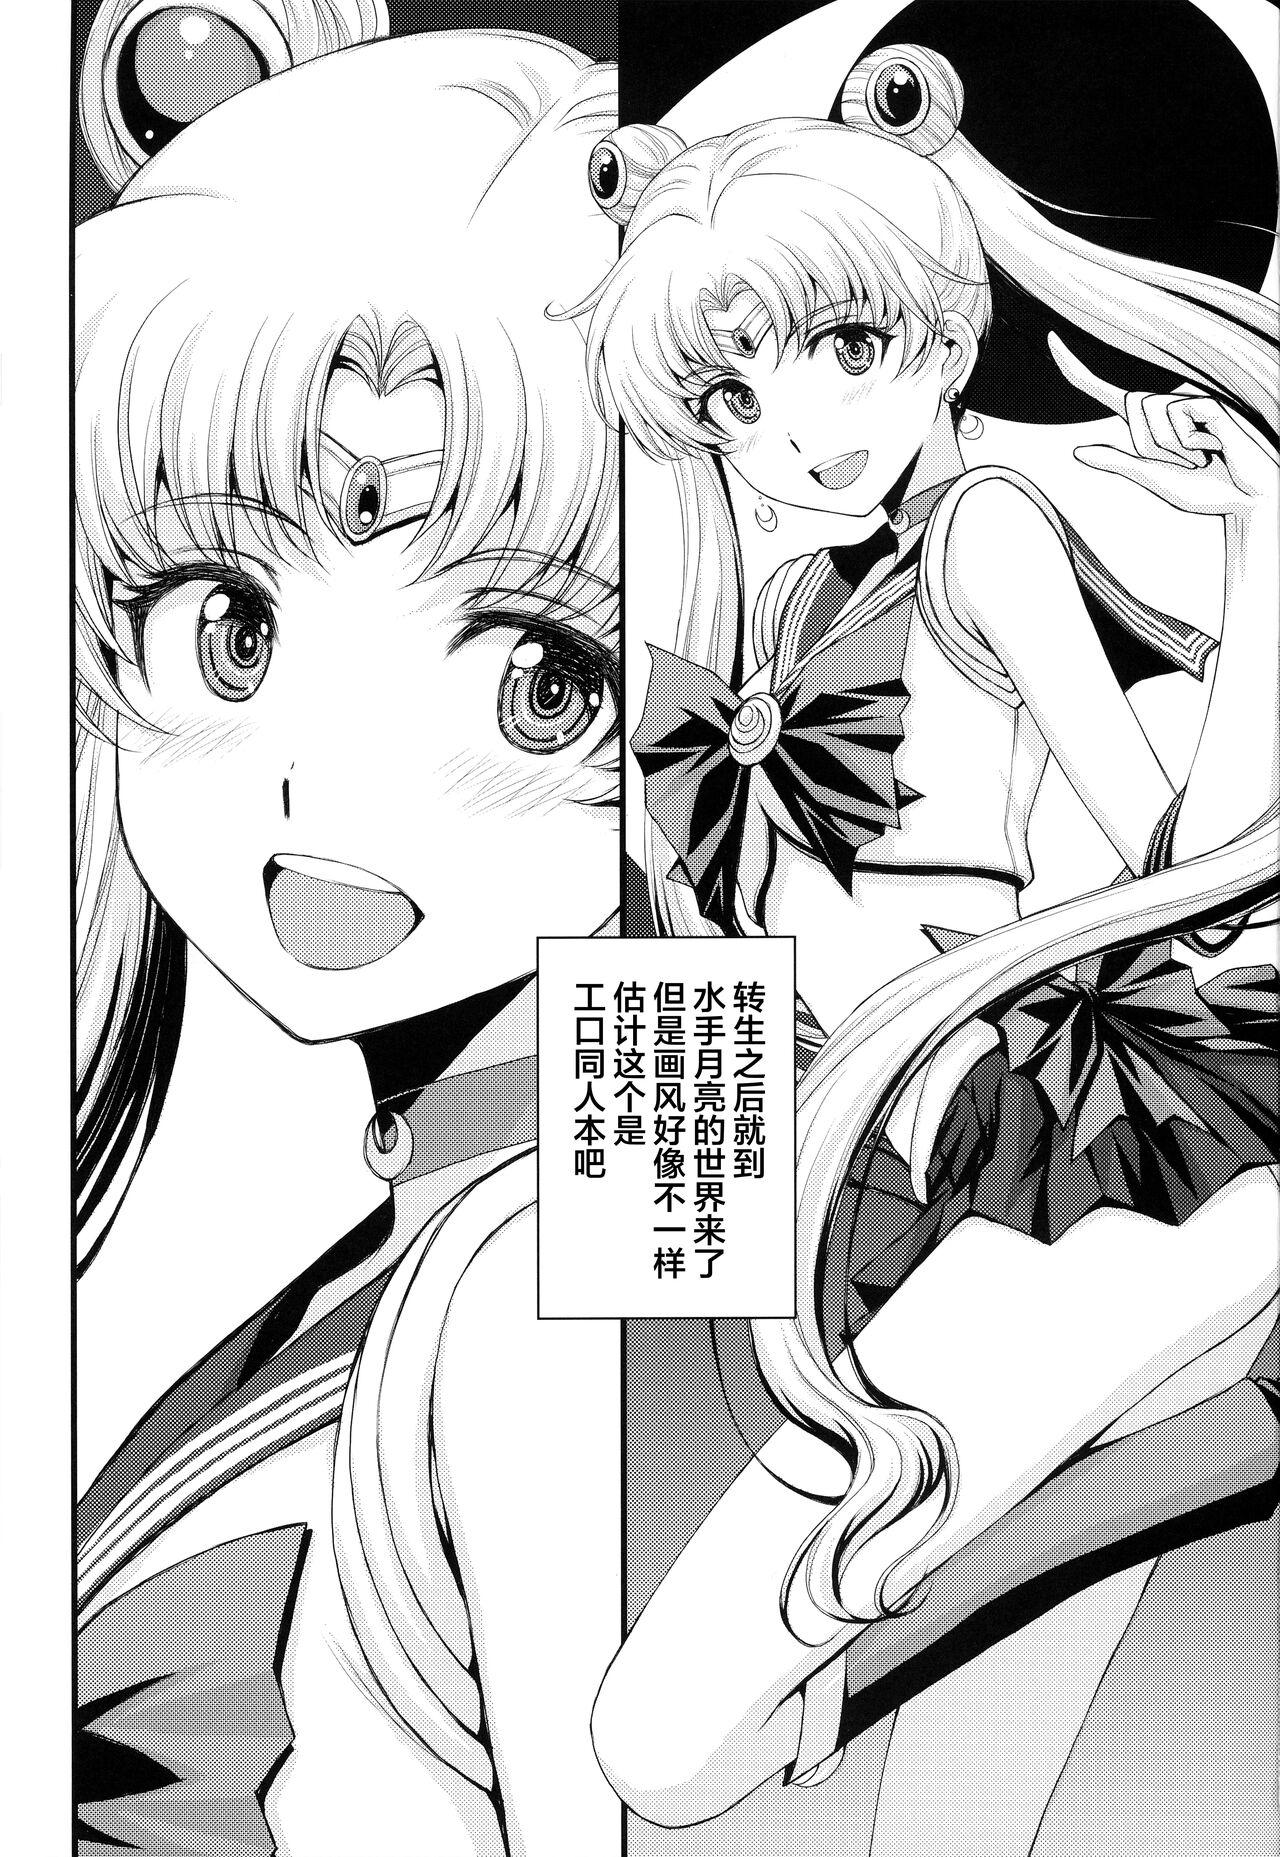 1080p Usagi no Junjou!? Chin Make Bishoujo Senshi! - Sailor moon | bishoujo senshi sailor moon Long Hair - Page 2